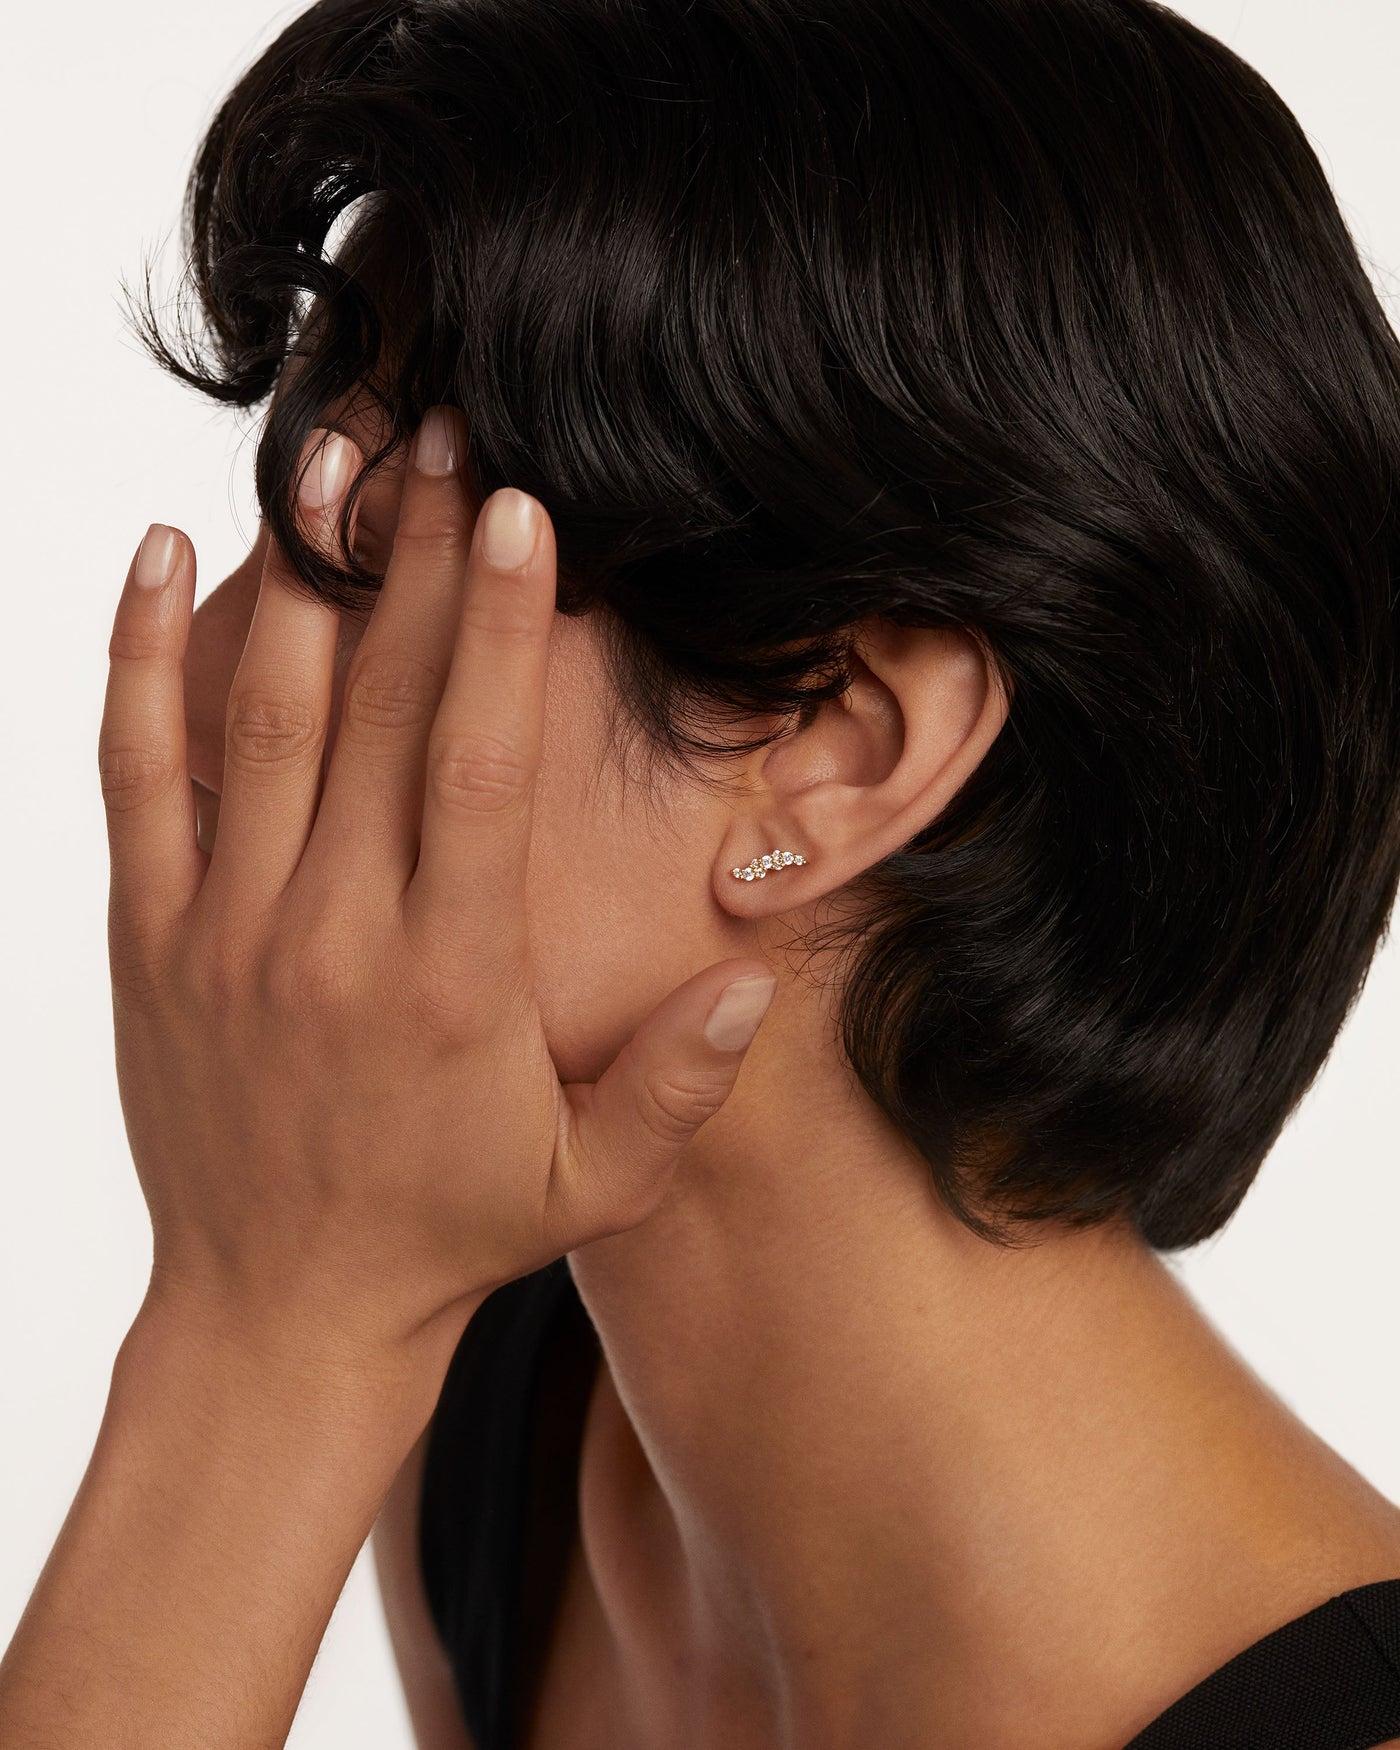 Crystal and zirconia  earrings